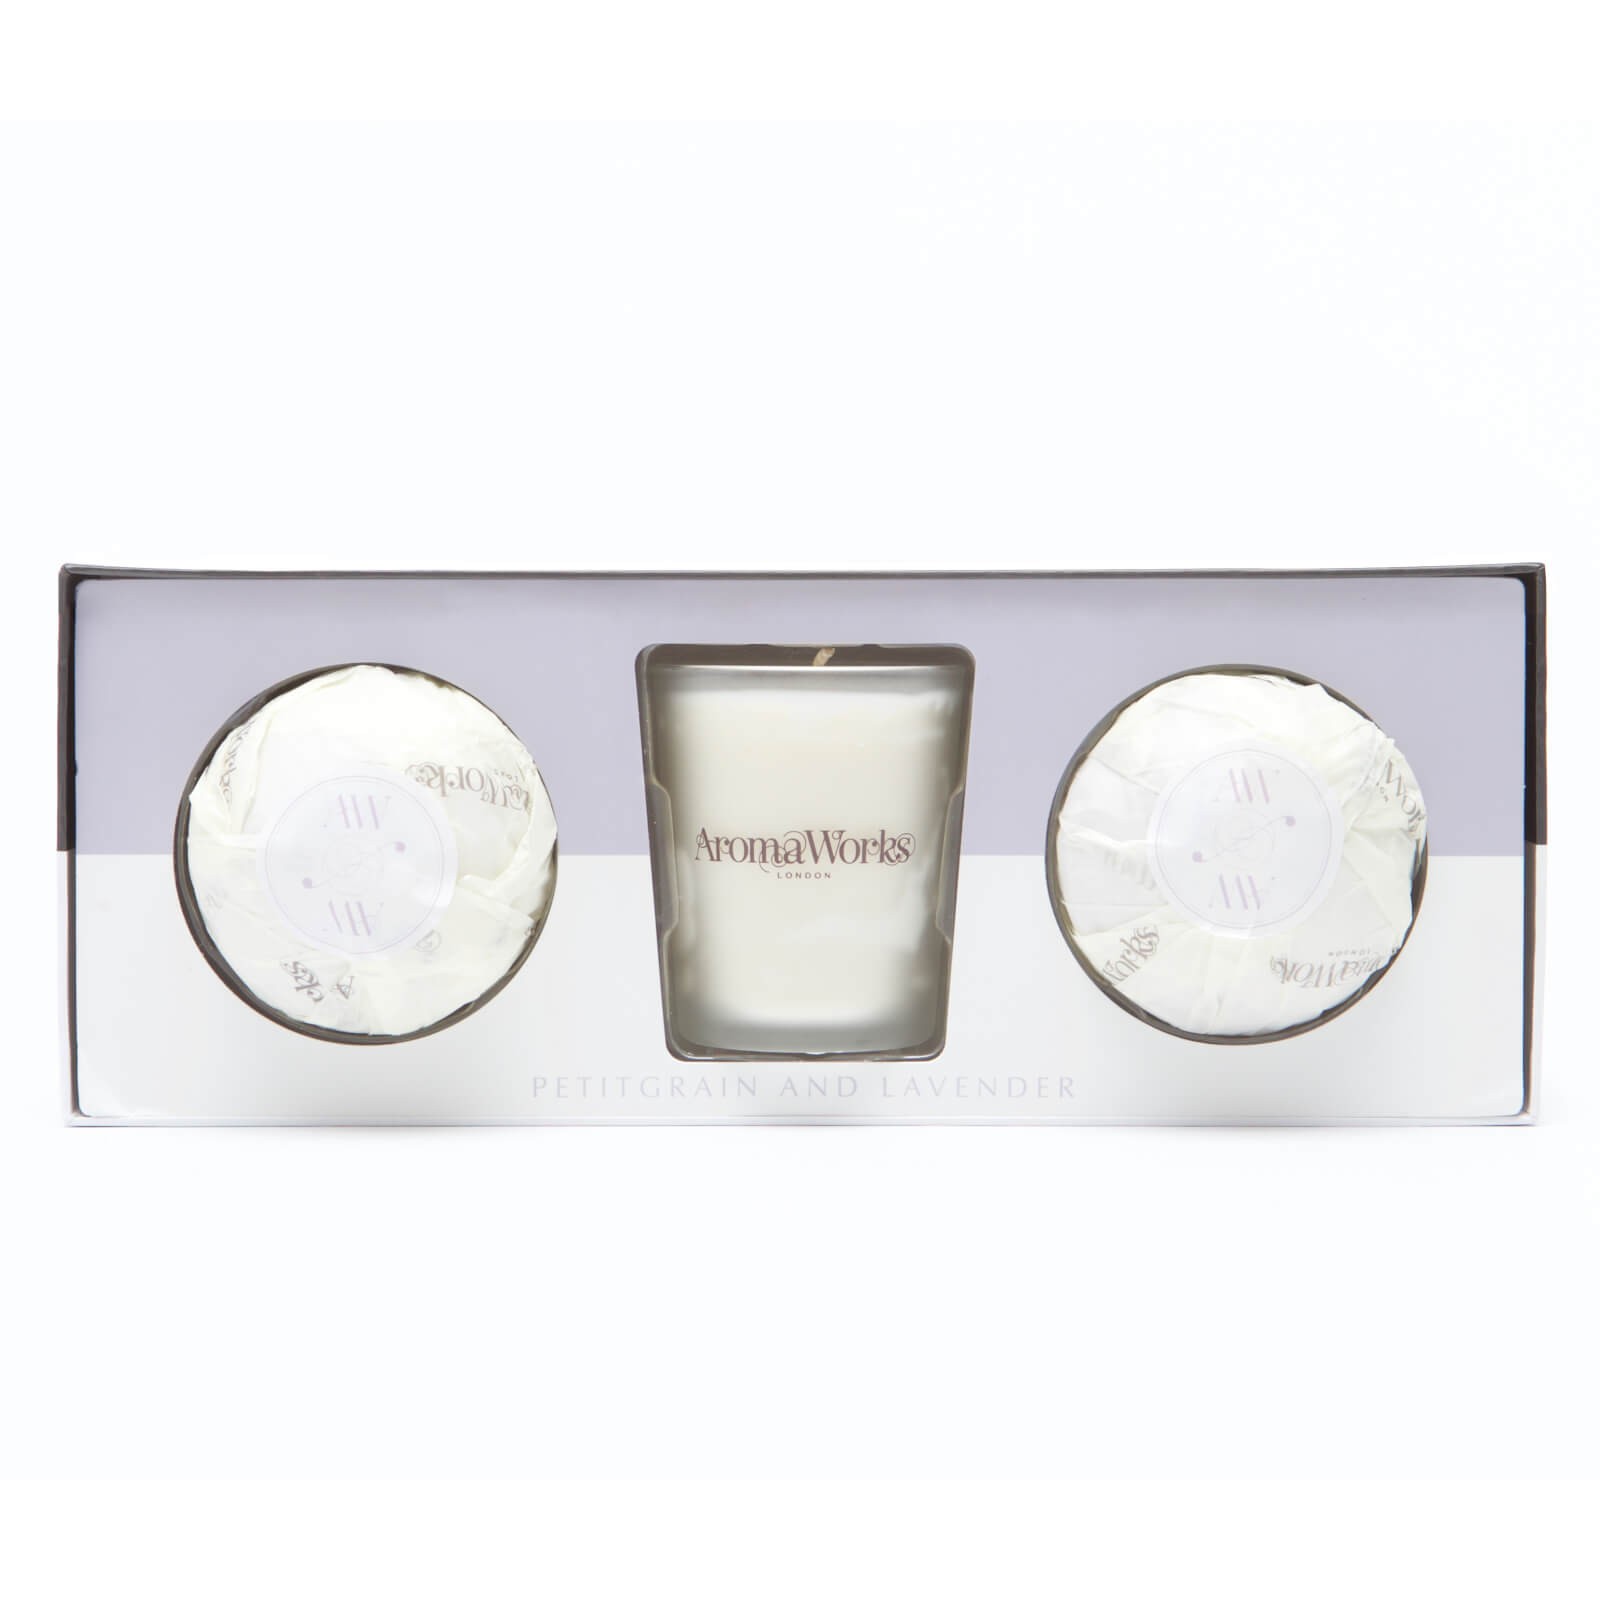 Aromaworks Light Range Petitgrain & Lavender Candle Mini AromaBomb Gift Set